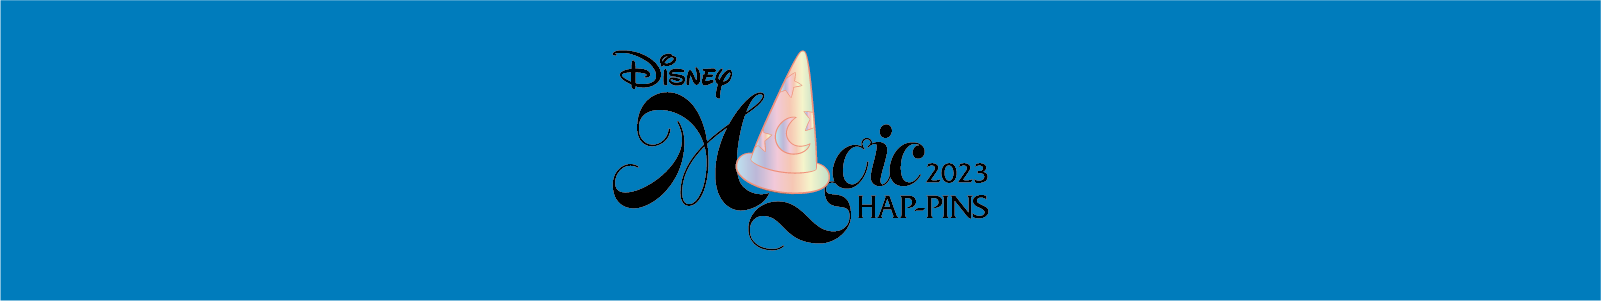 Disney Magic HAP-Pins 2023 Pin Trading Event